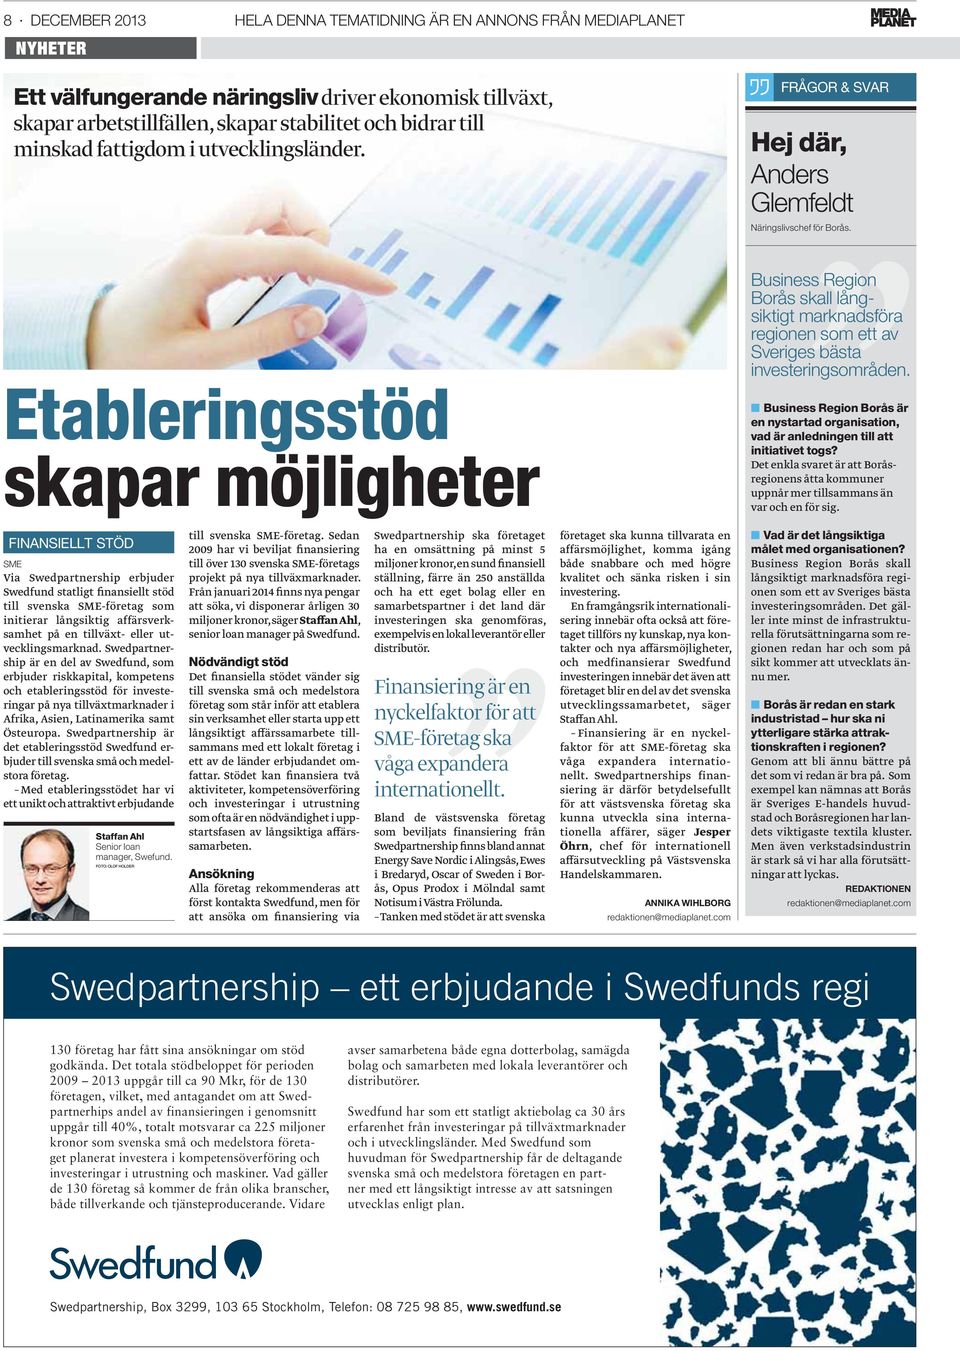 Etableringsstöd skapar möjligheter Business Region Borås skall långsiktigt marknadsföra regionen som ett av Sveriges bästa investeringsområden.